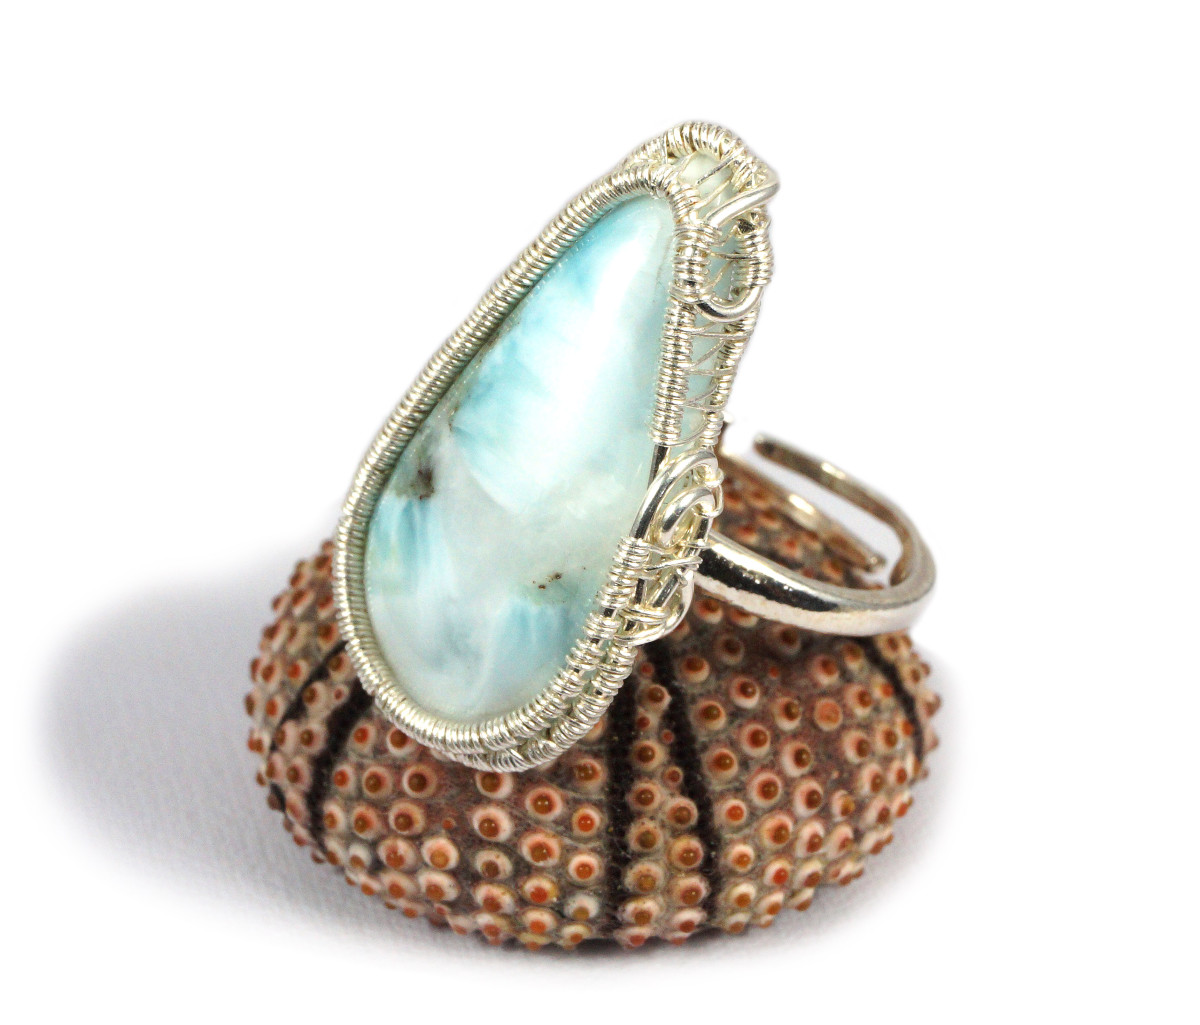 Larimar, Srebrny regulowany pierścionek z larimarem niebieskim regulowany, prezent dla niej prezent dla mamy, prezent dla kobiety handmade pomysł na prezent